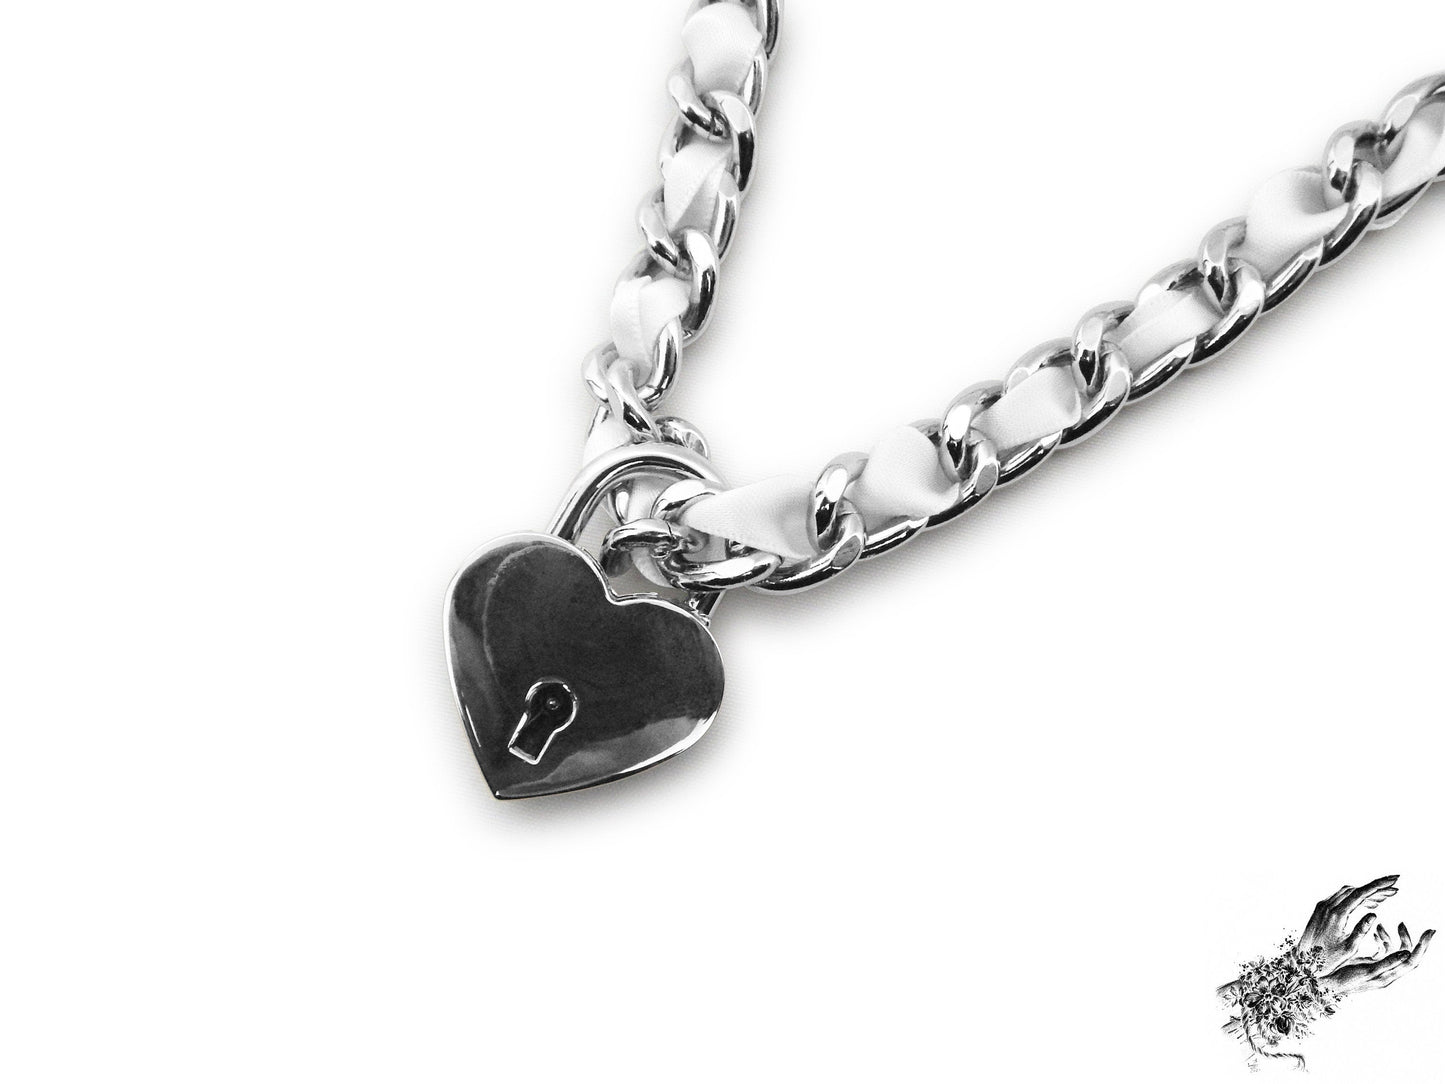 White Ribbon Chain and Heart Padlock Choker - LARGE SIZE